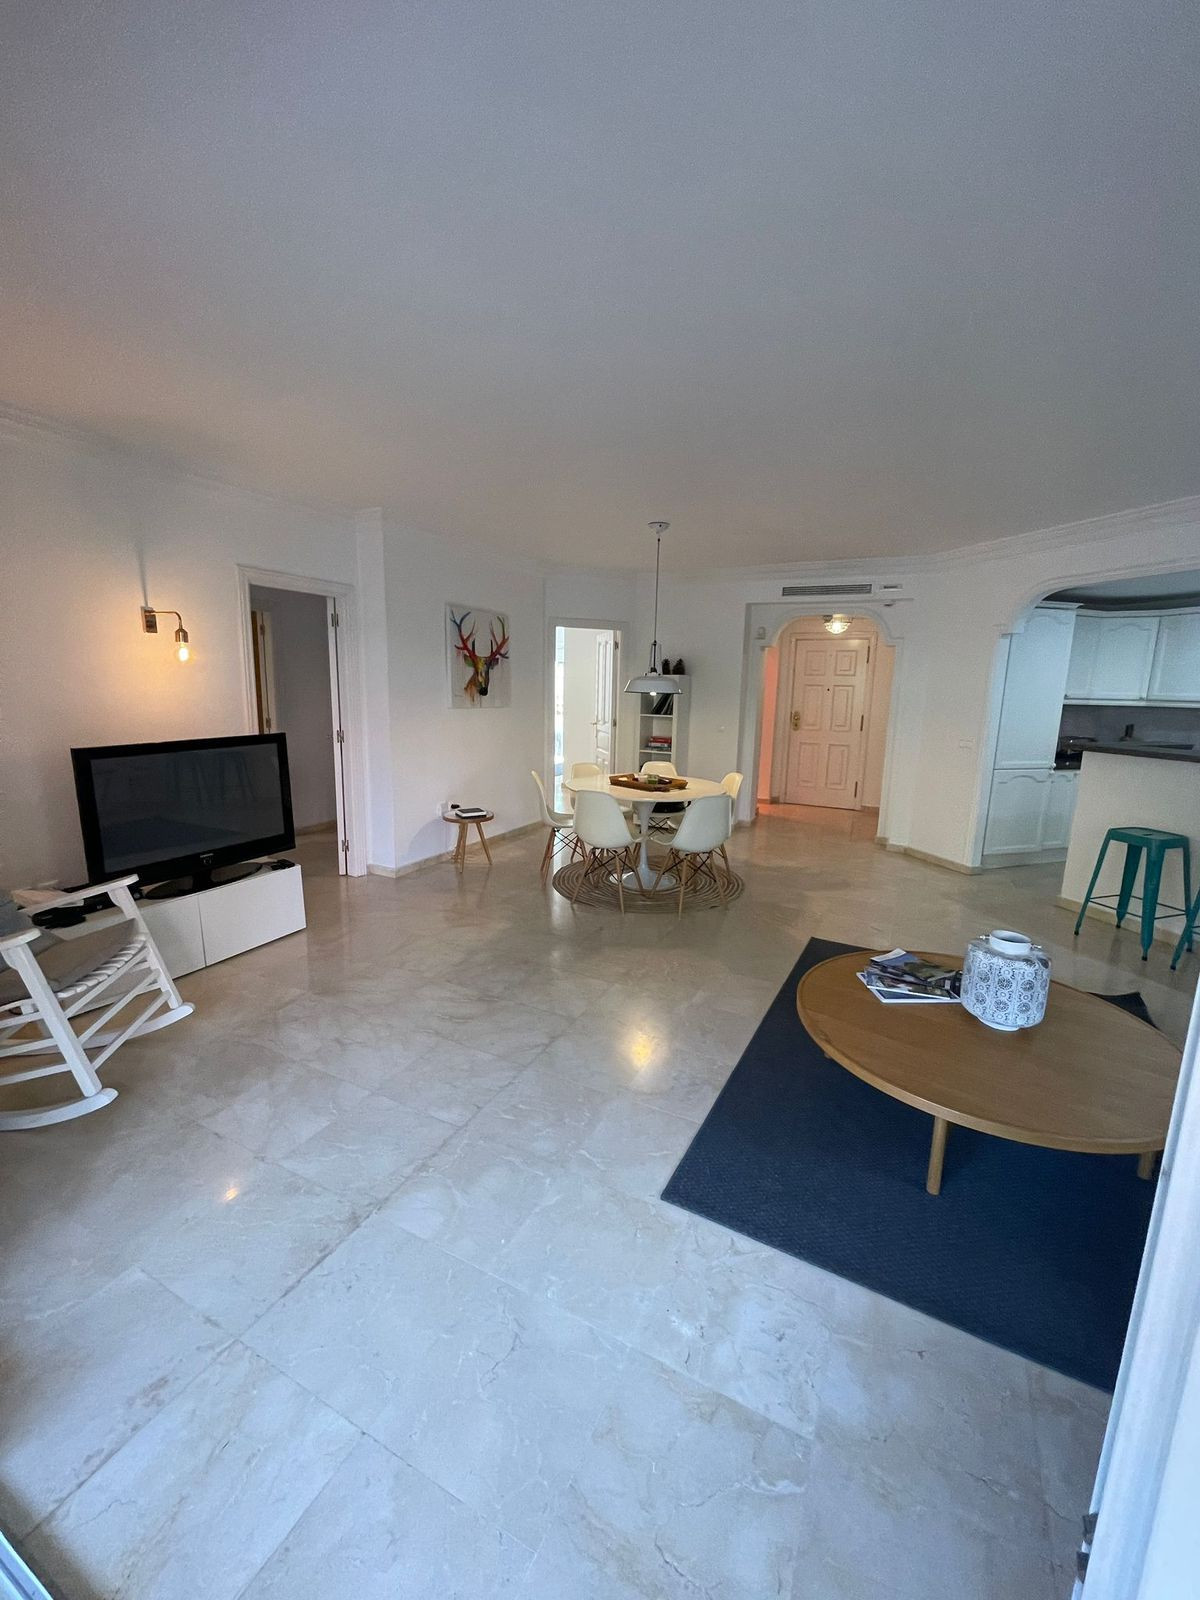 						Apartment  Ground Floor
													for sale 
																			 in Elviria
					